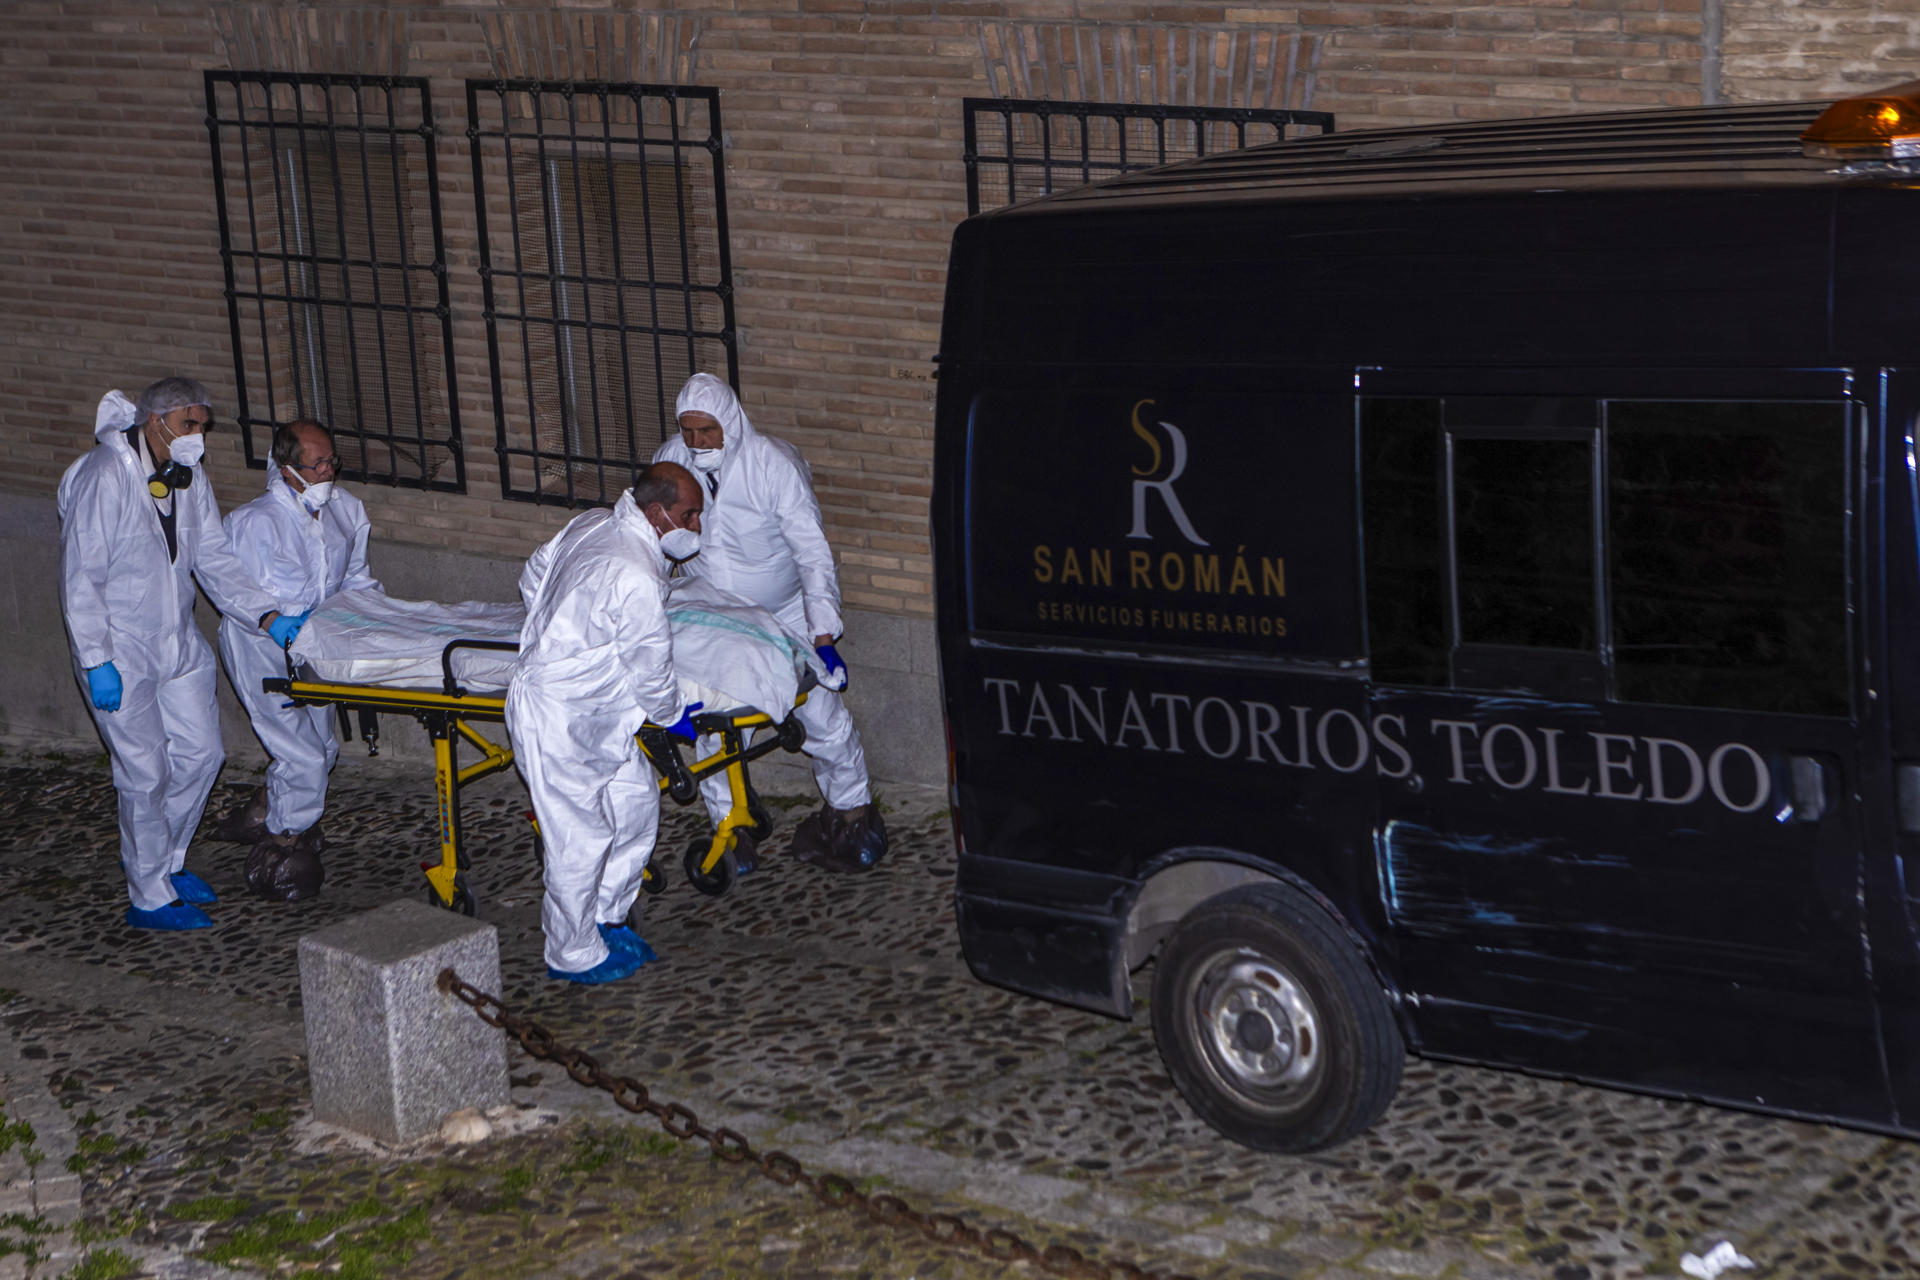 Una estufa de gas butano causa la muerte de cuatro personas en una vivienda de Toledo